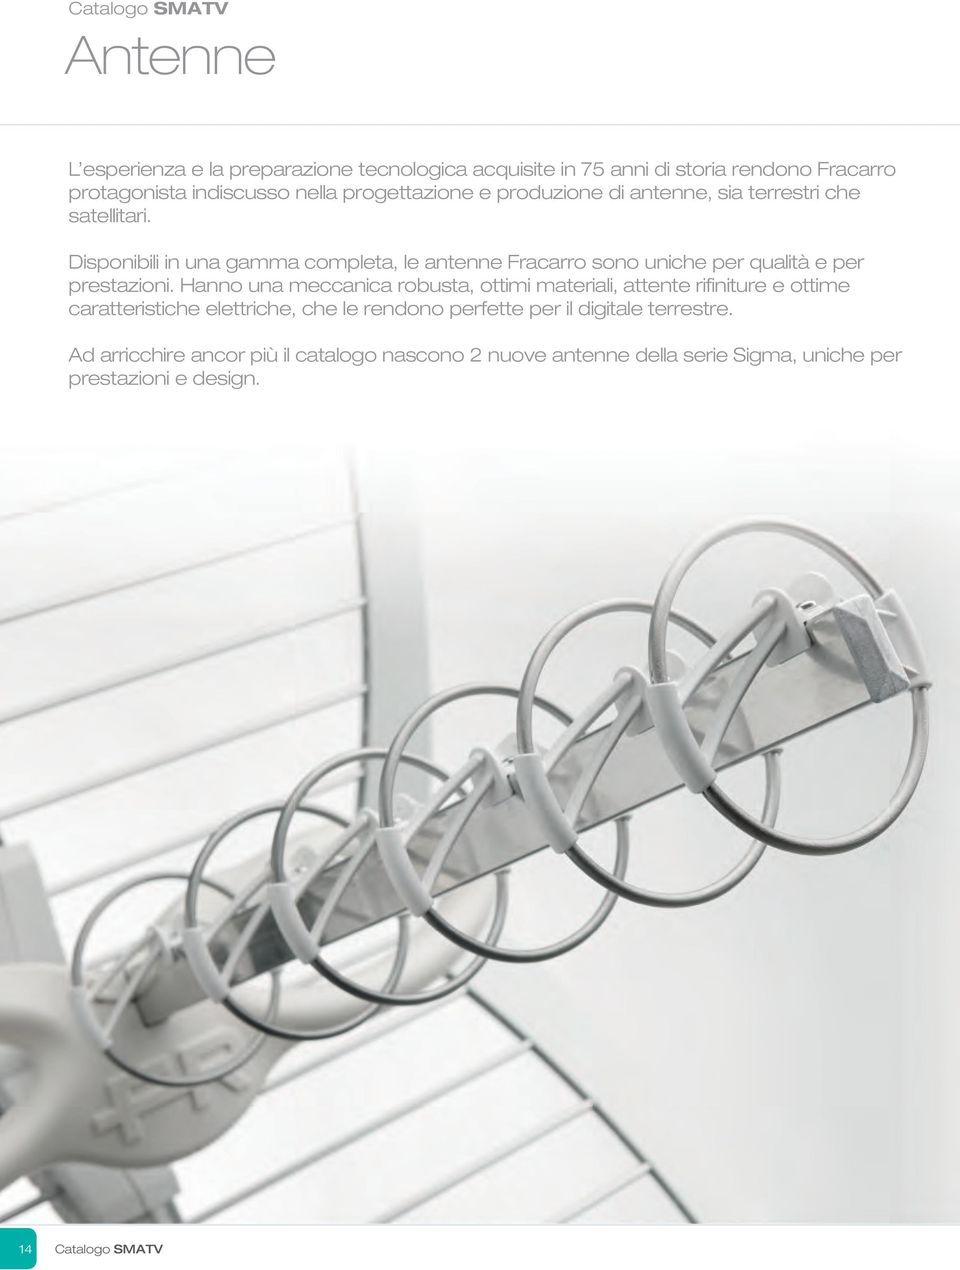 Disponibili in una gamma completa, le antenne Fracarro sono uniche per qualità e per prestazioni.